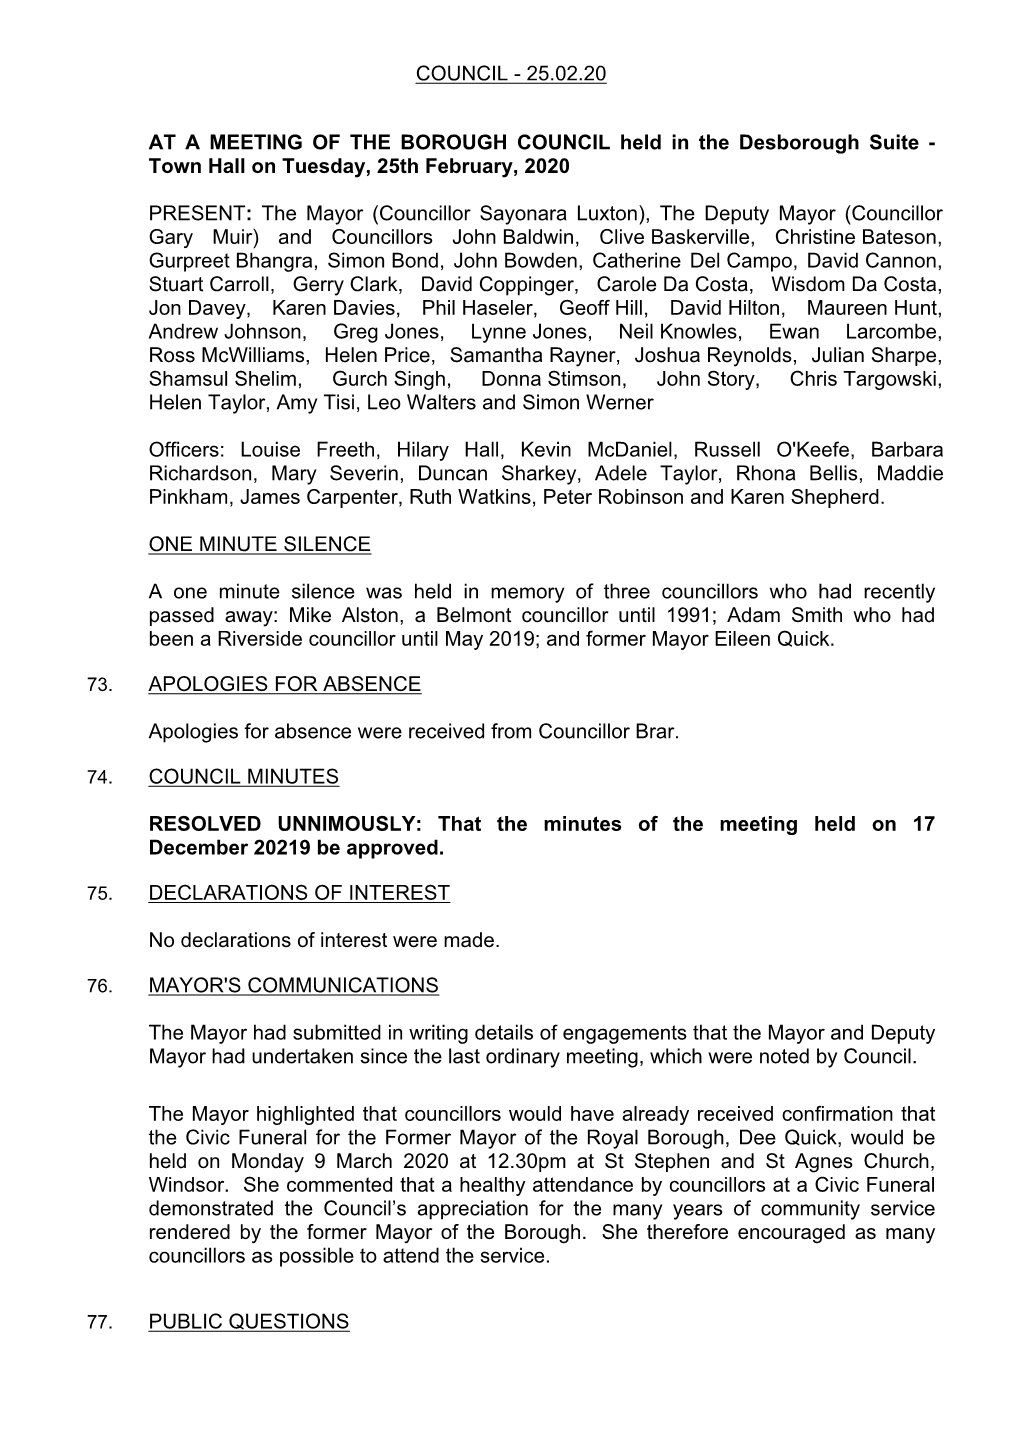 Council Minutes PDF 424 KB